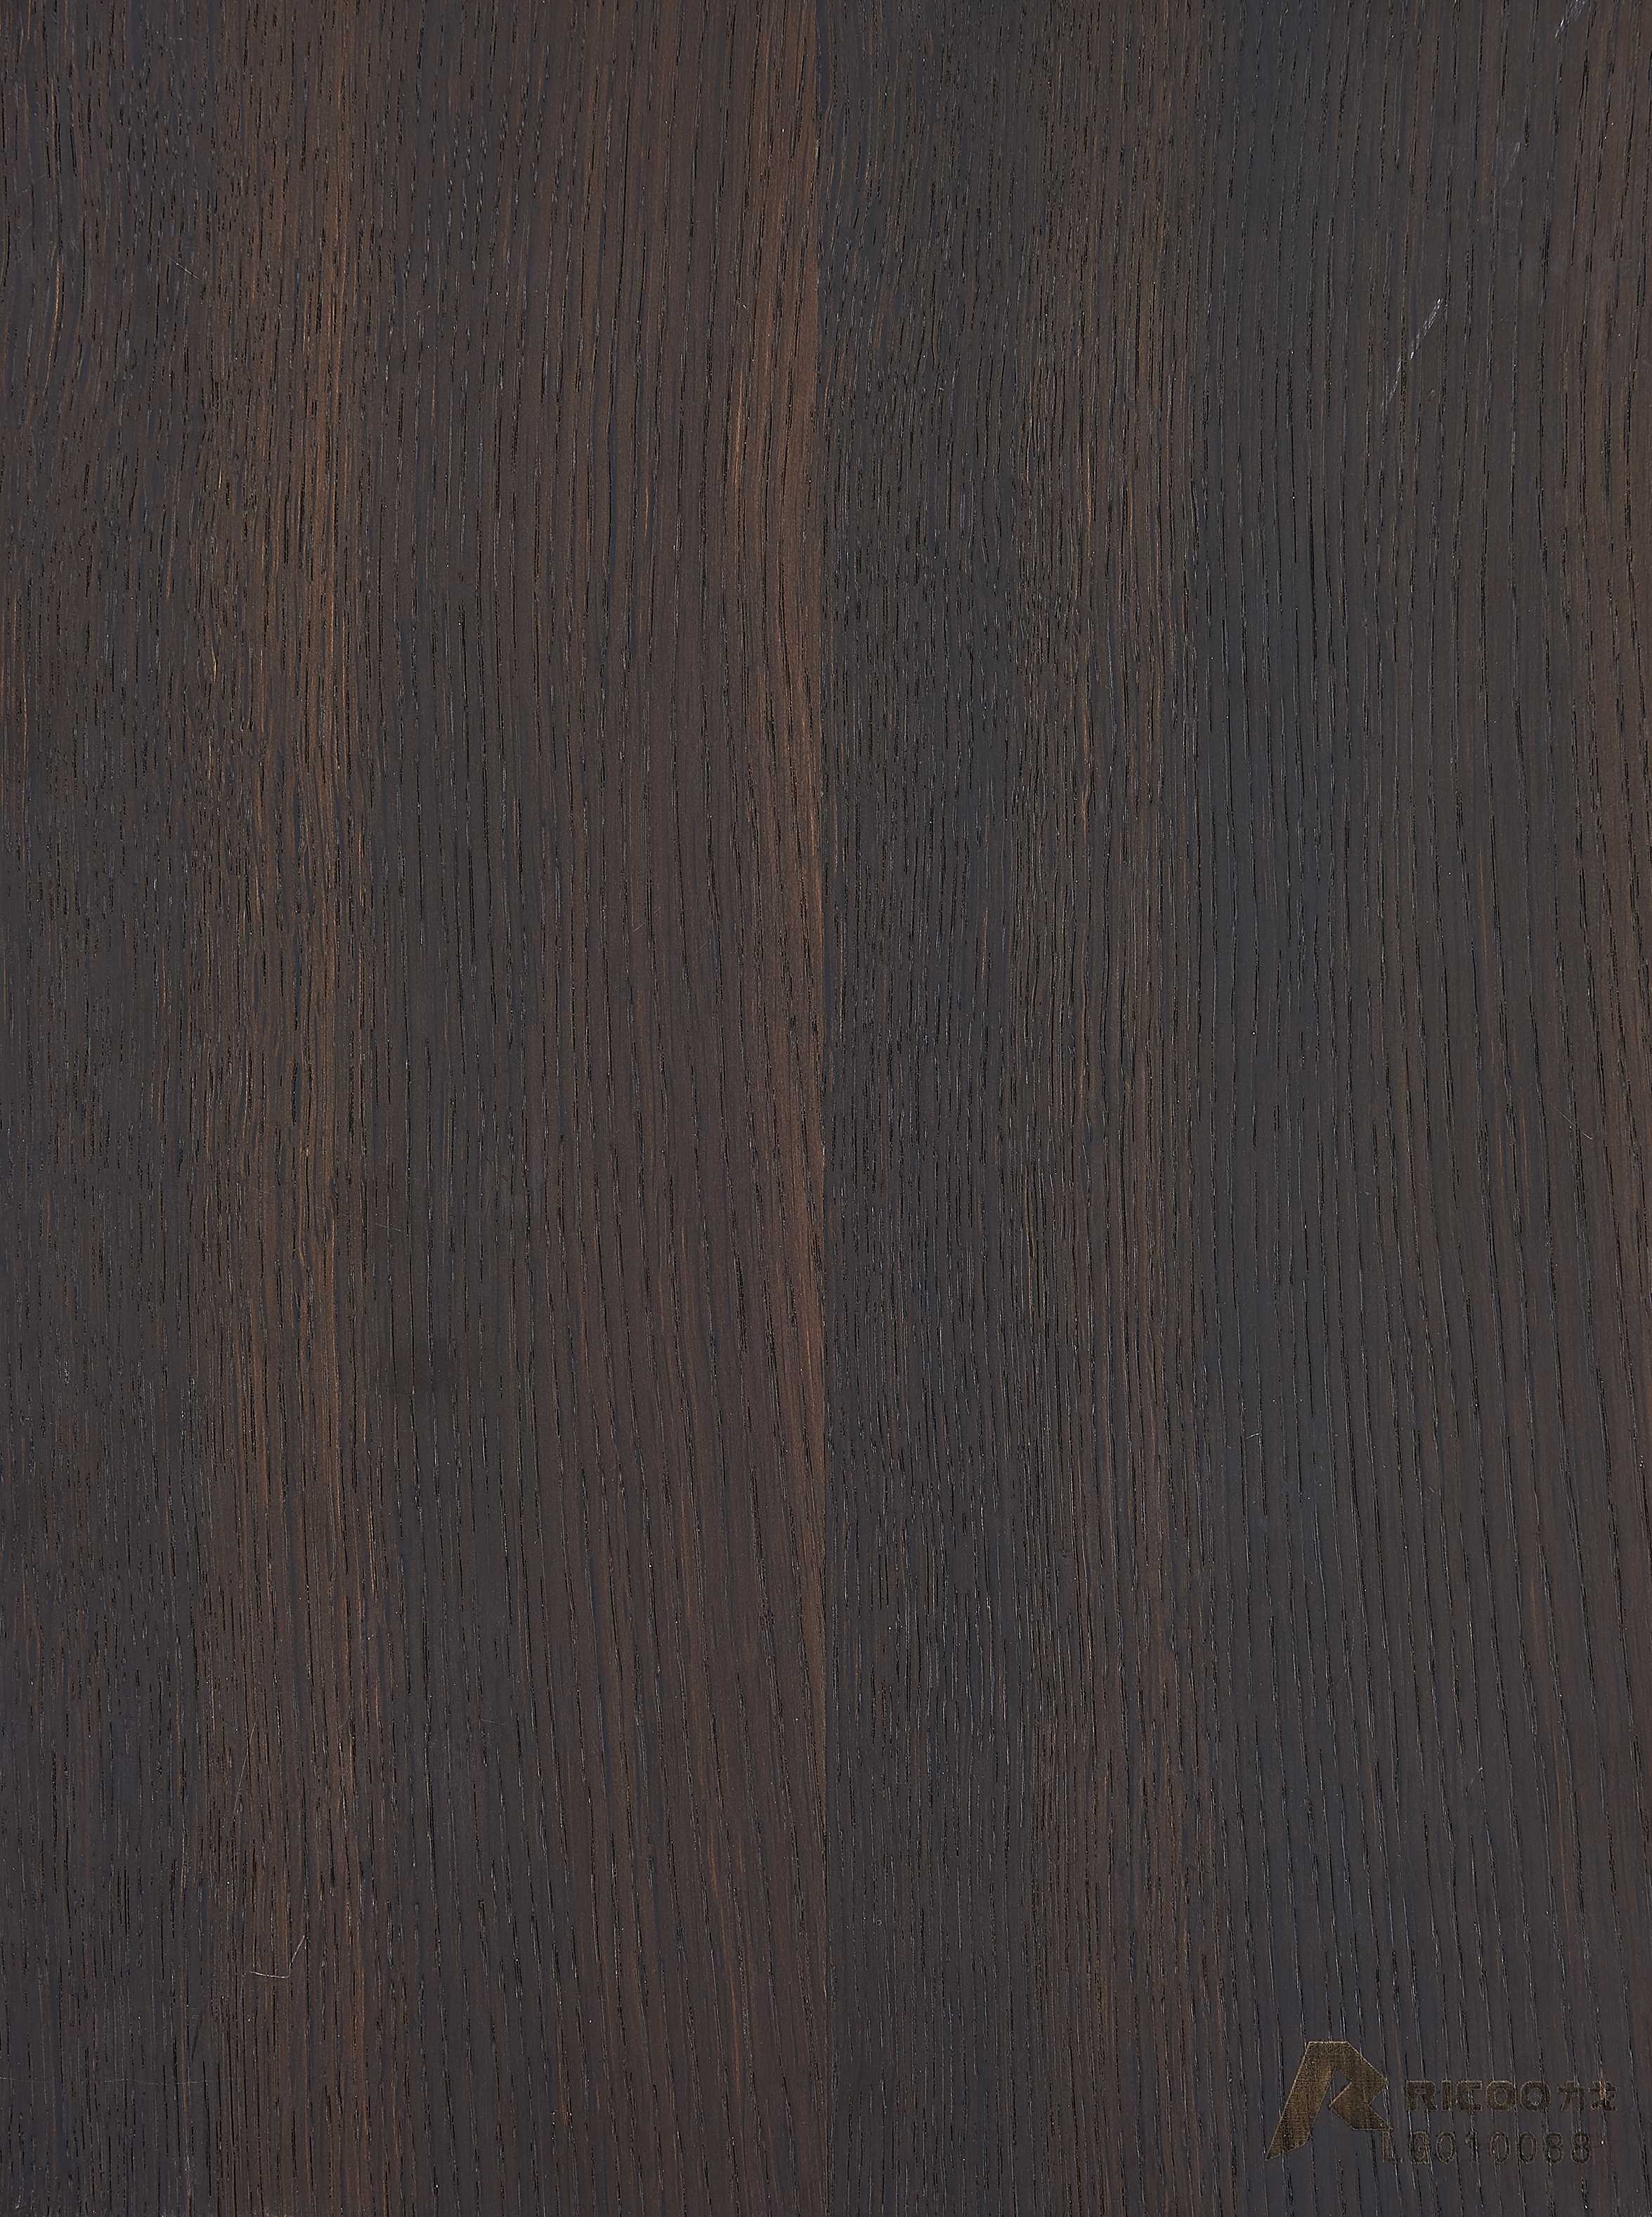 无缝烟熏橡木贴图 木纹 装饰板 饰面板 木饰板材质贴图下载-【集简空间】「每日更新」